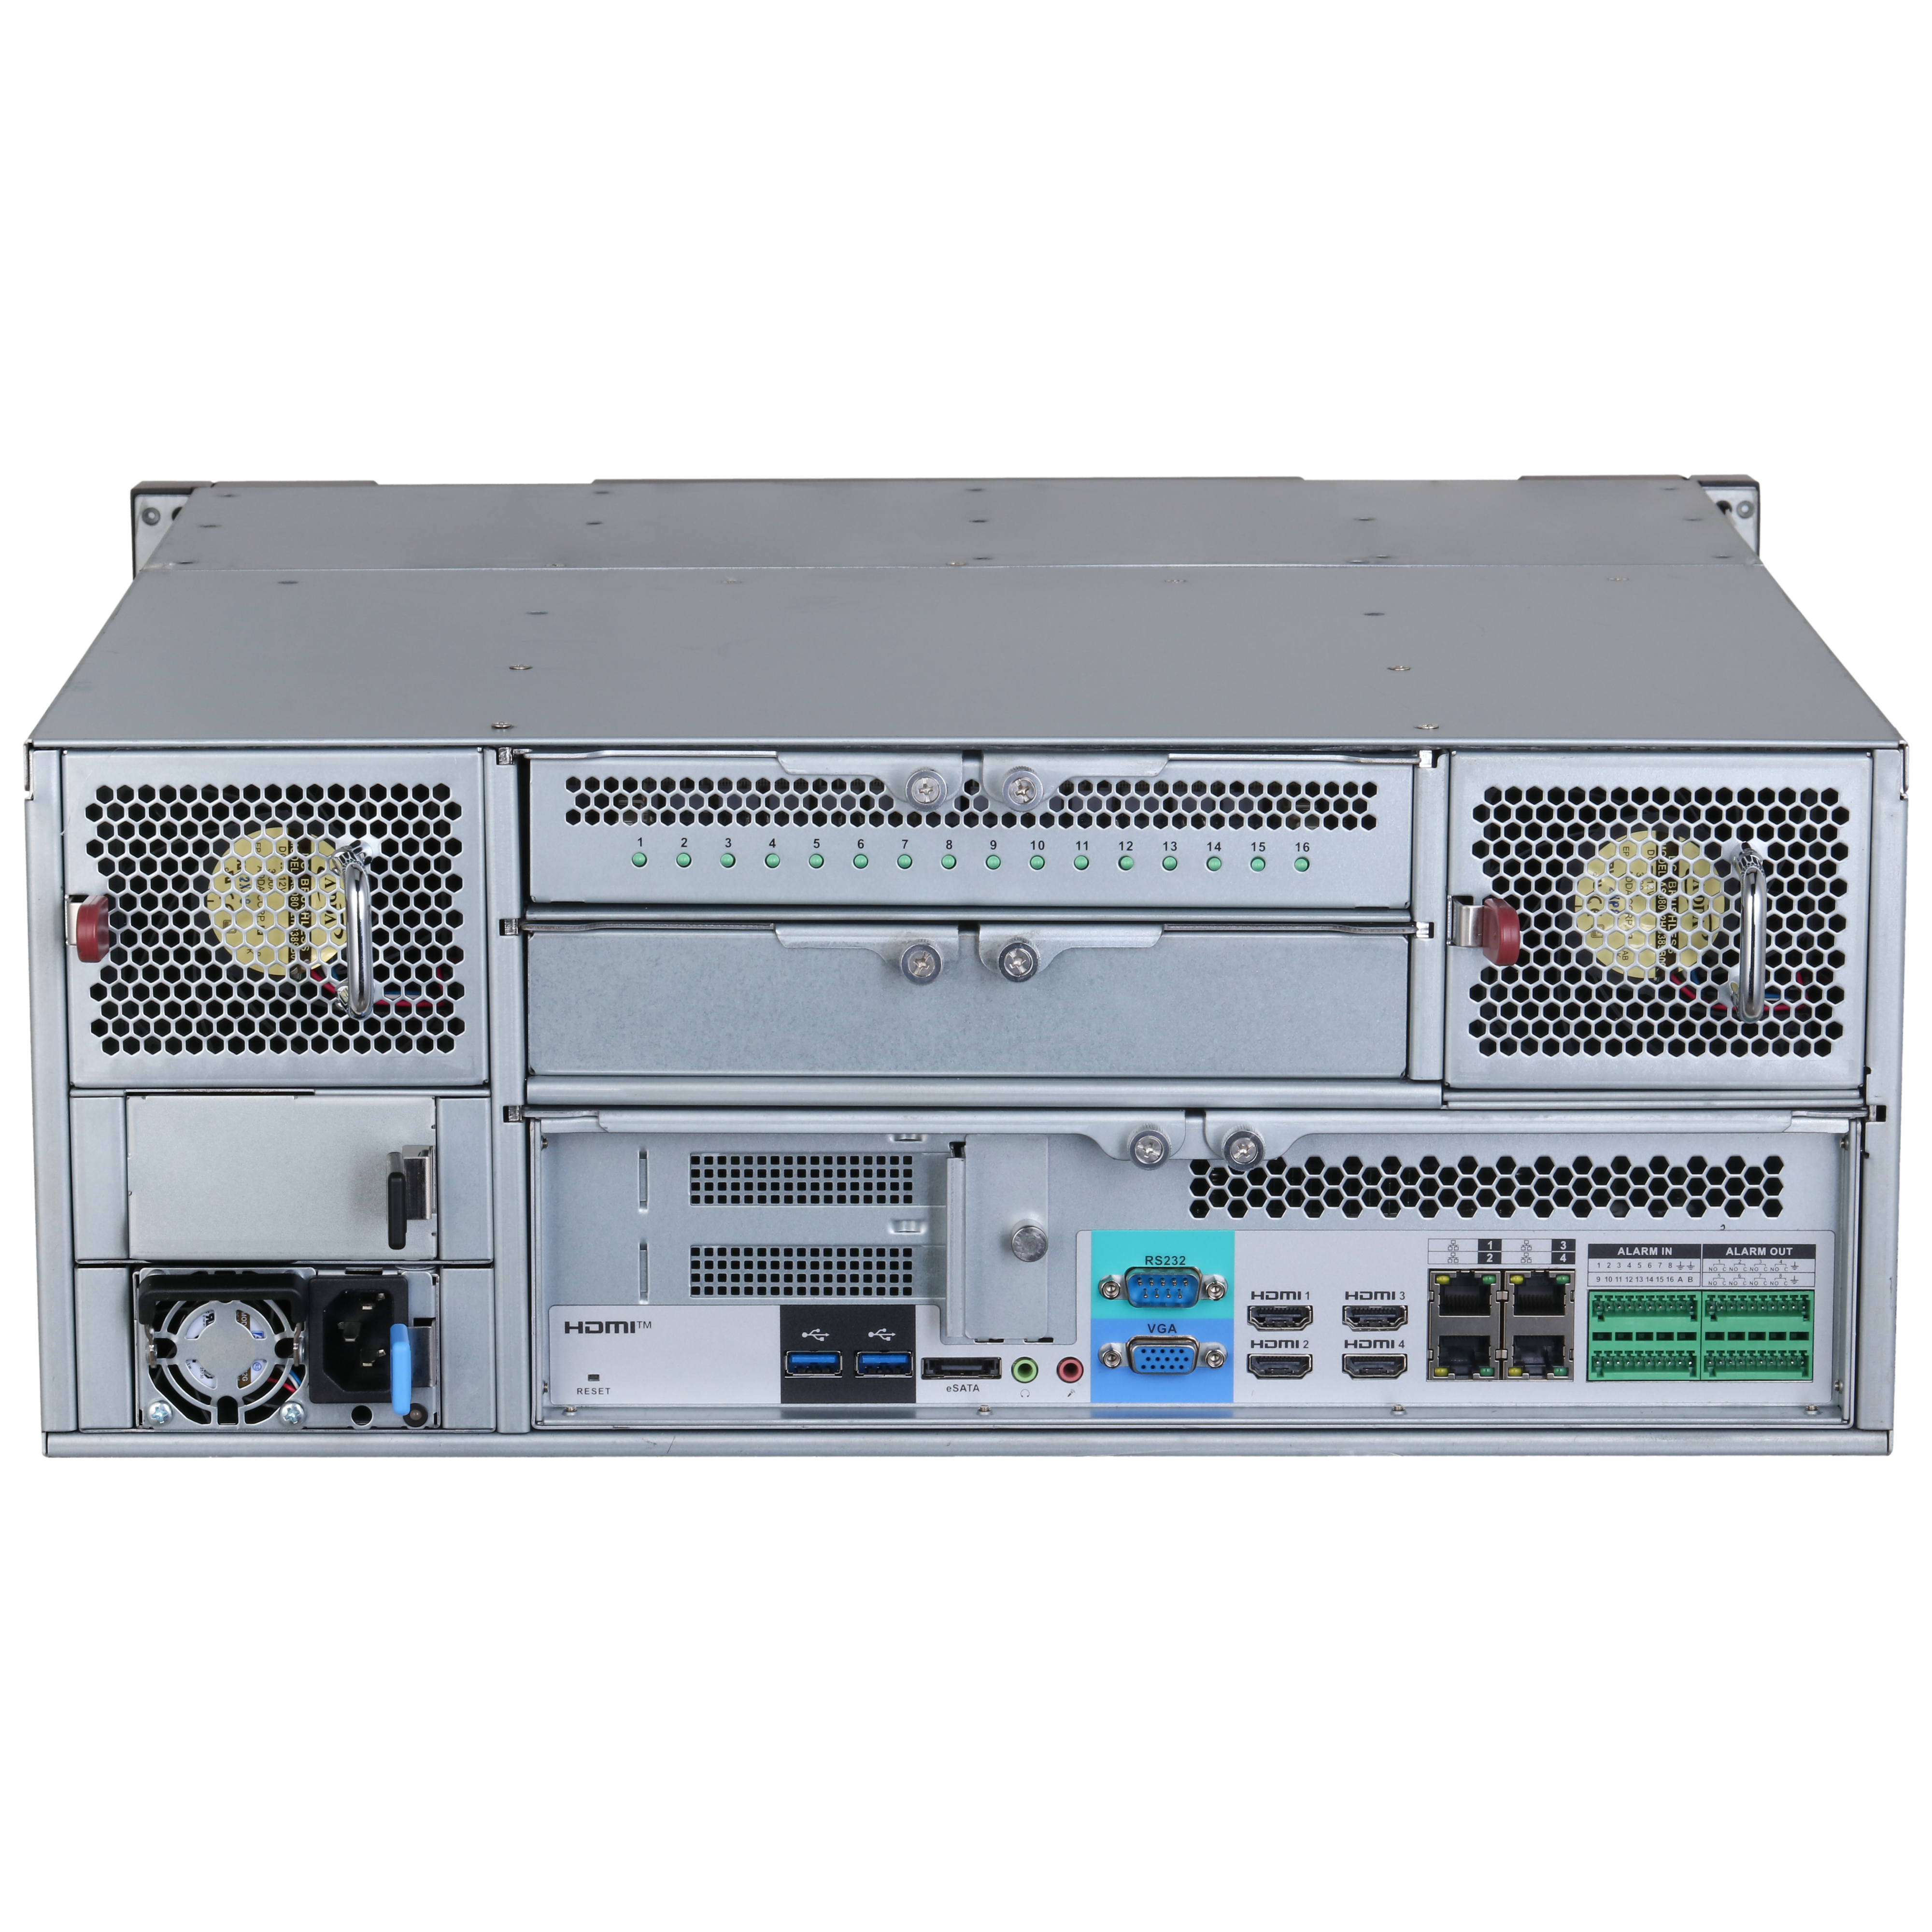 DAHUA IVSS7124-8I 256CH 4U Intelligent Video Surveillance Server